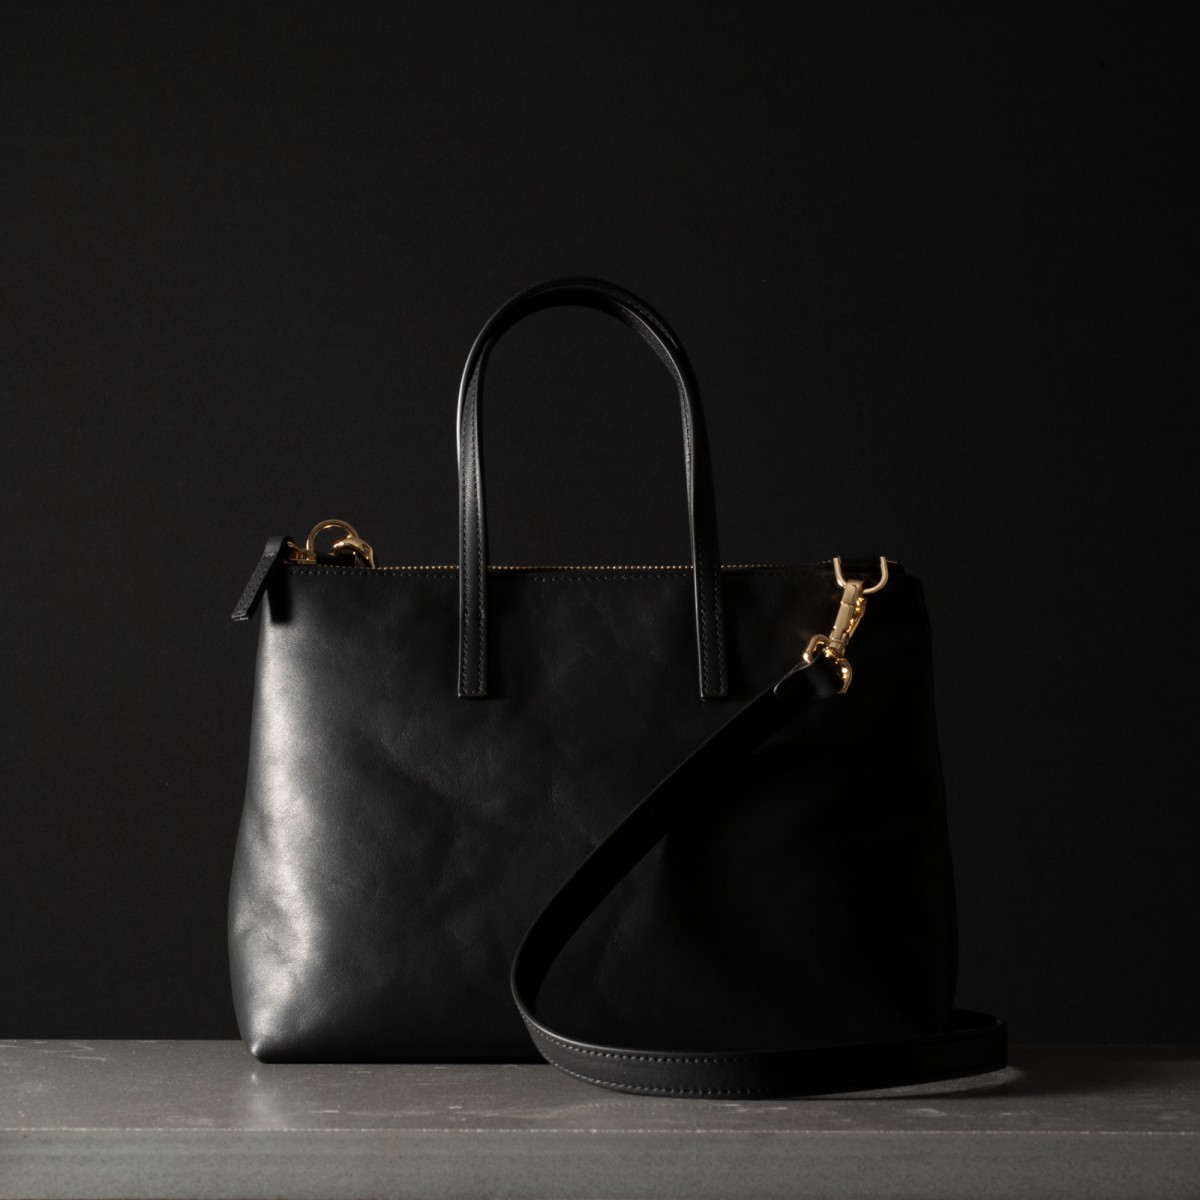 DIVA - Calfskin leather bag, handmade in Italy